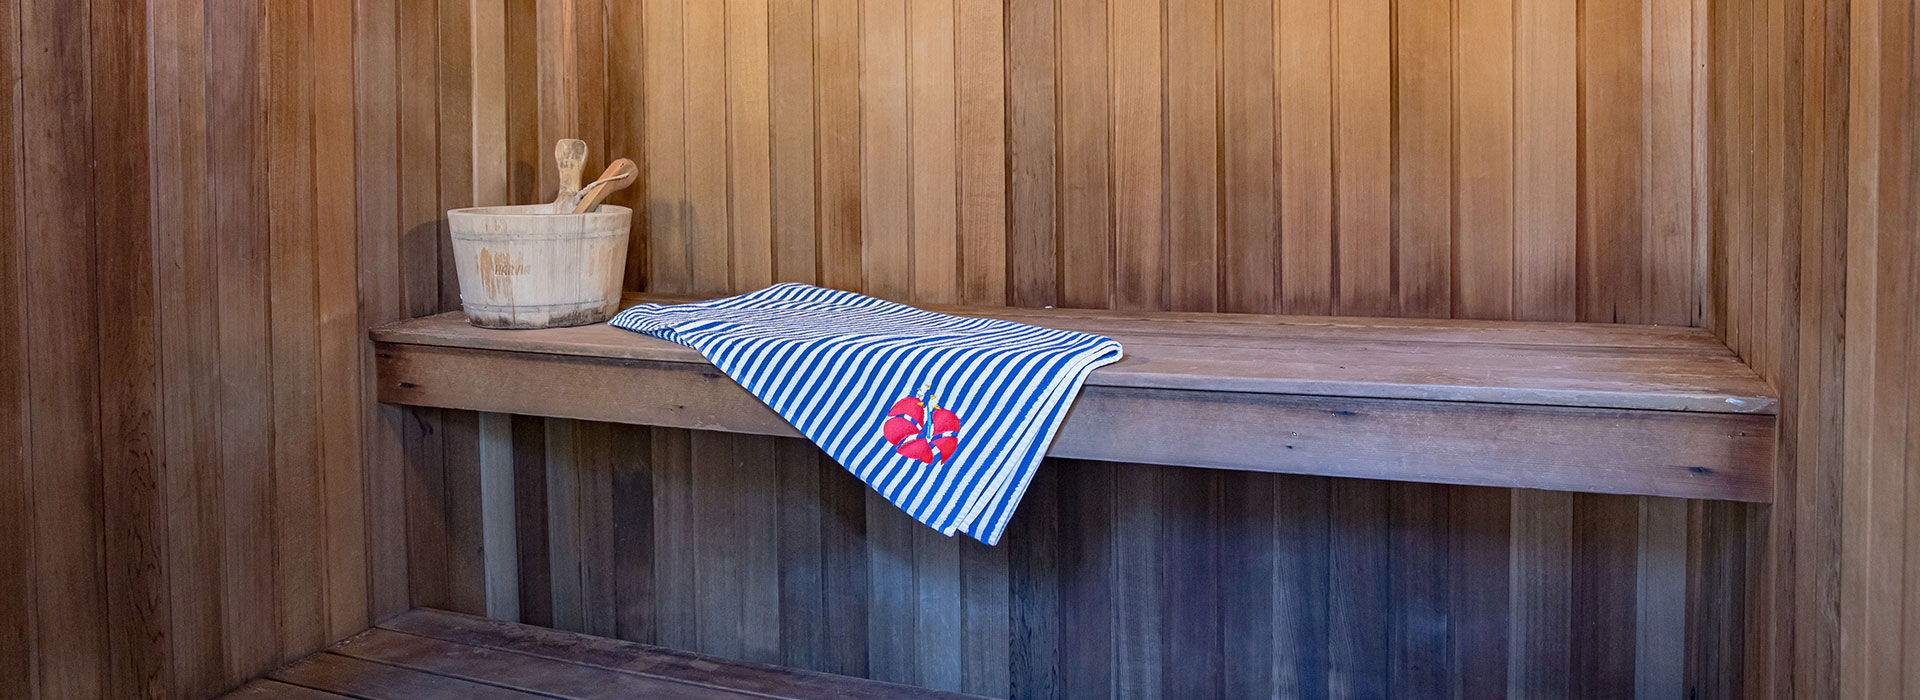 Islander Noosa sauna